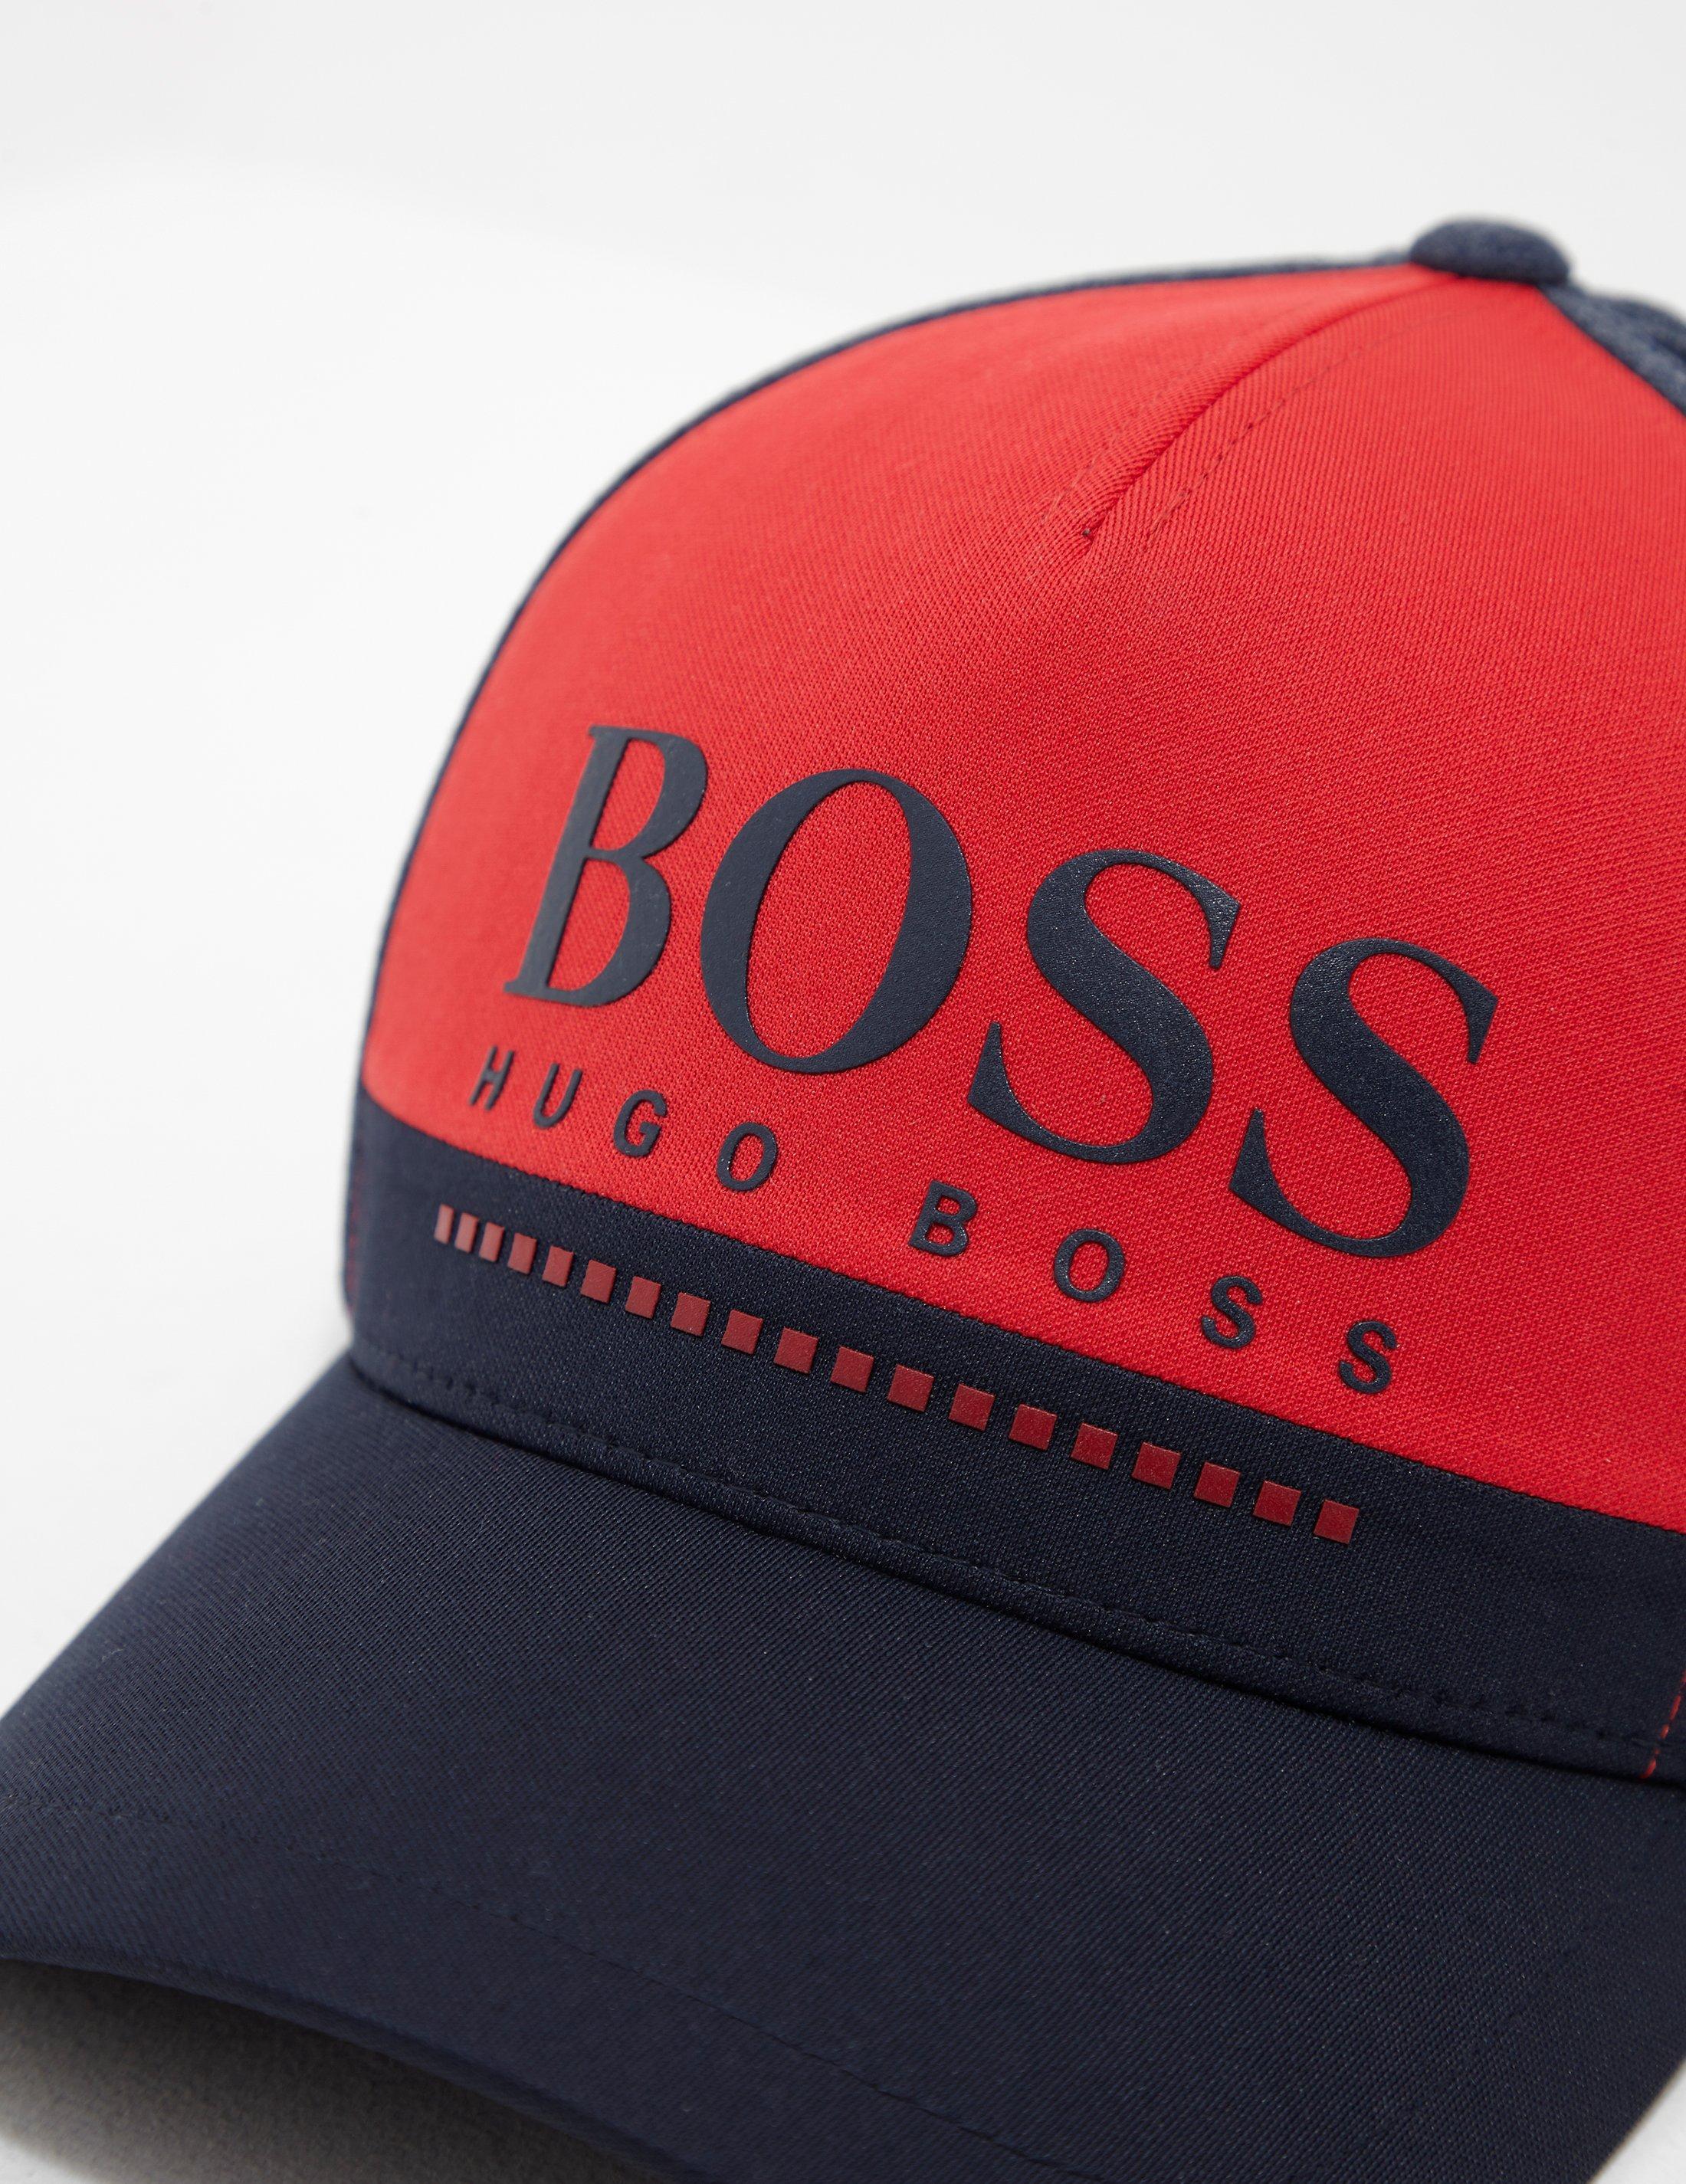 hugo boss cap red